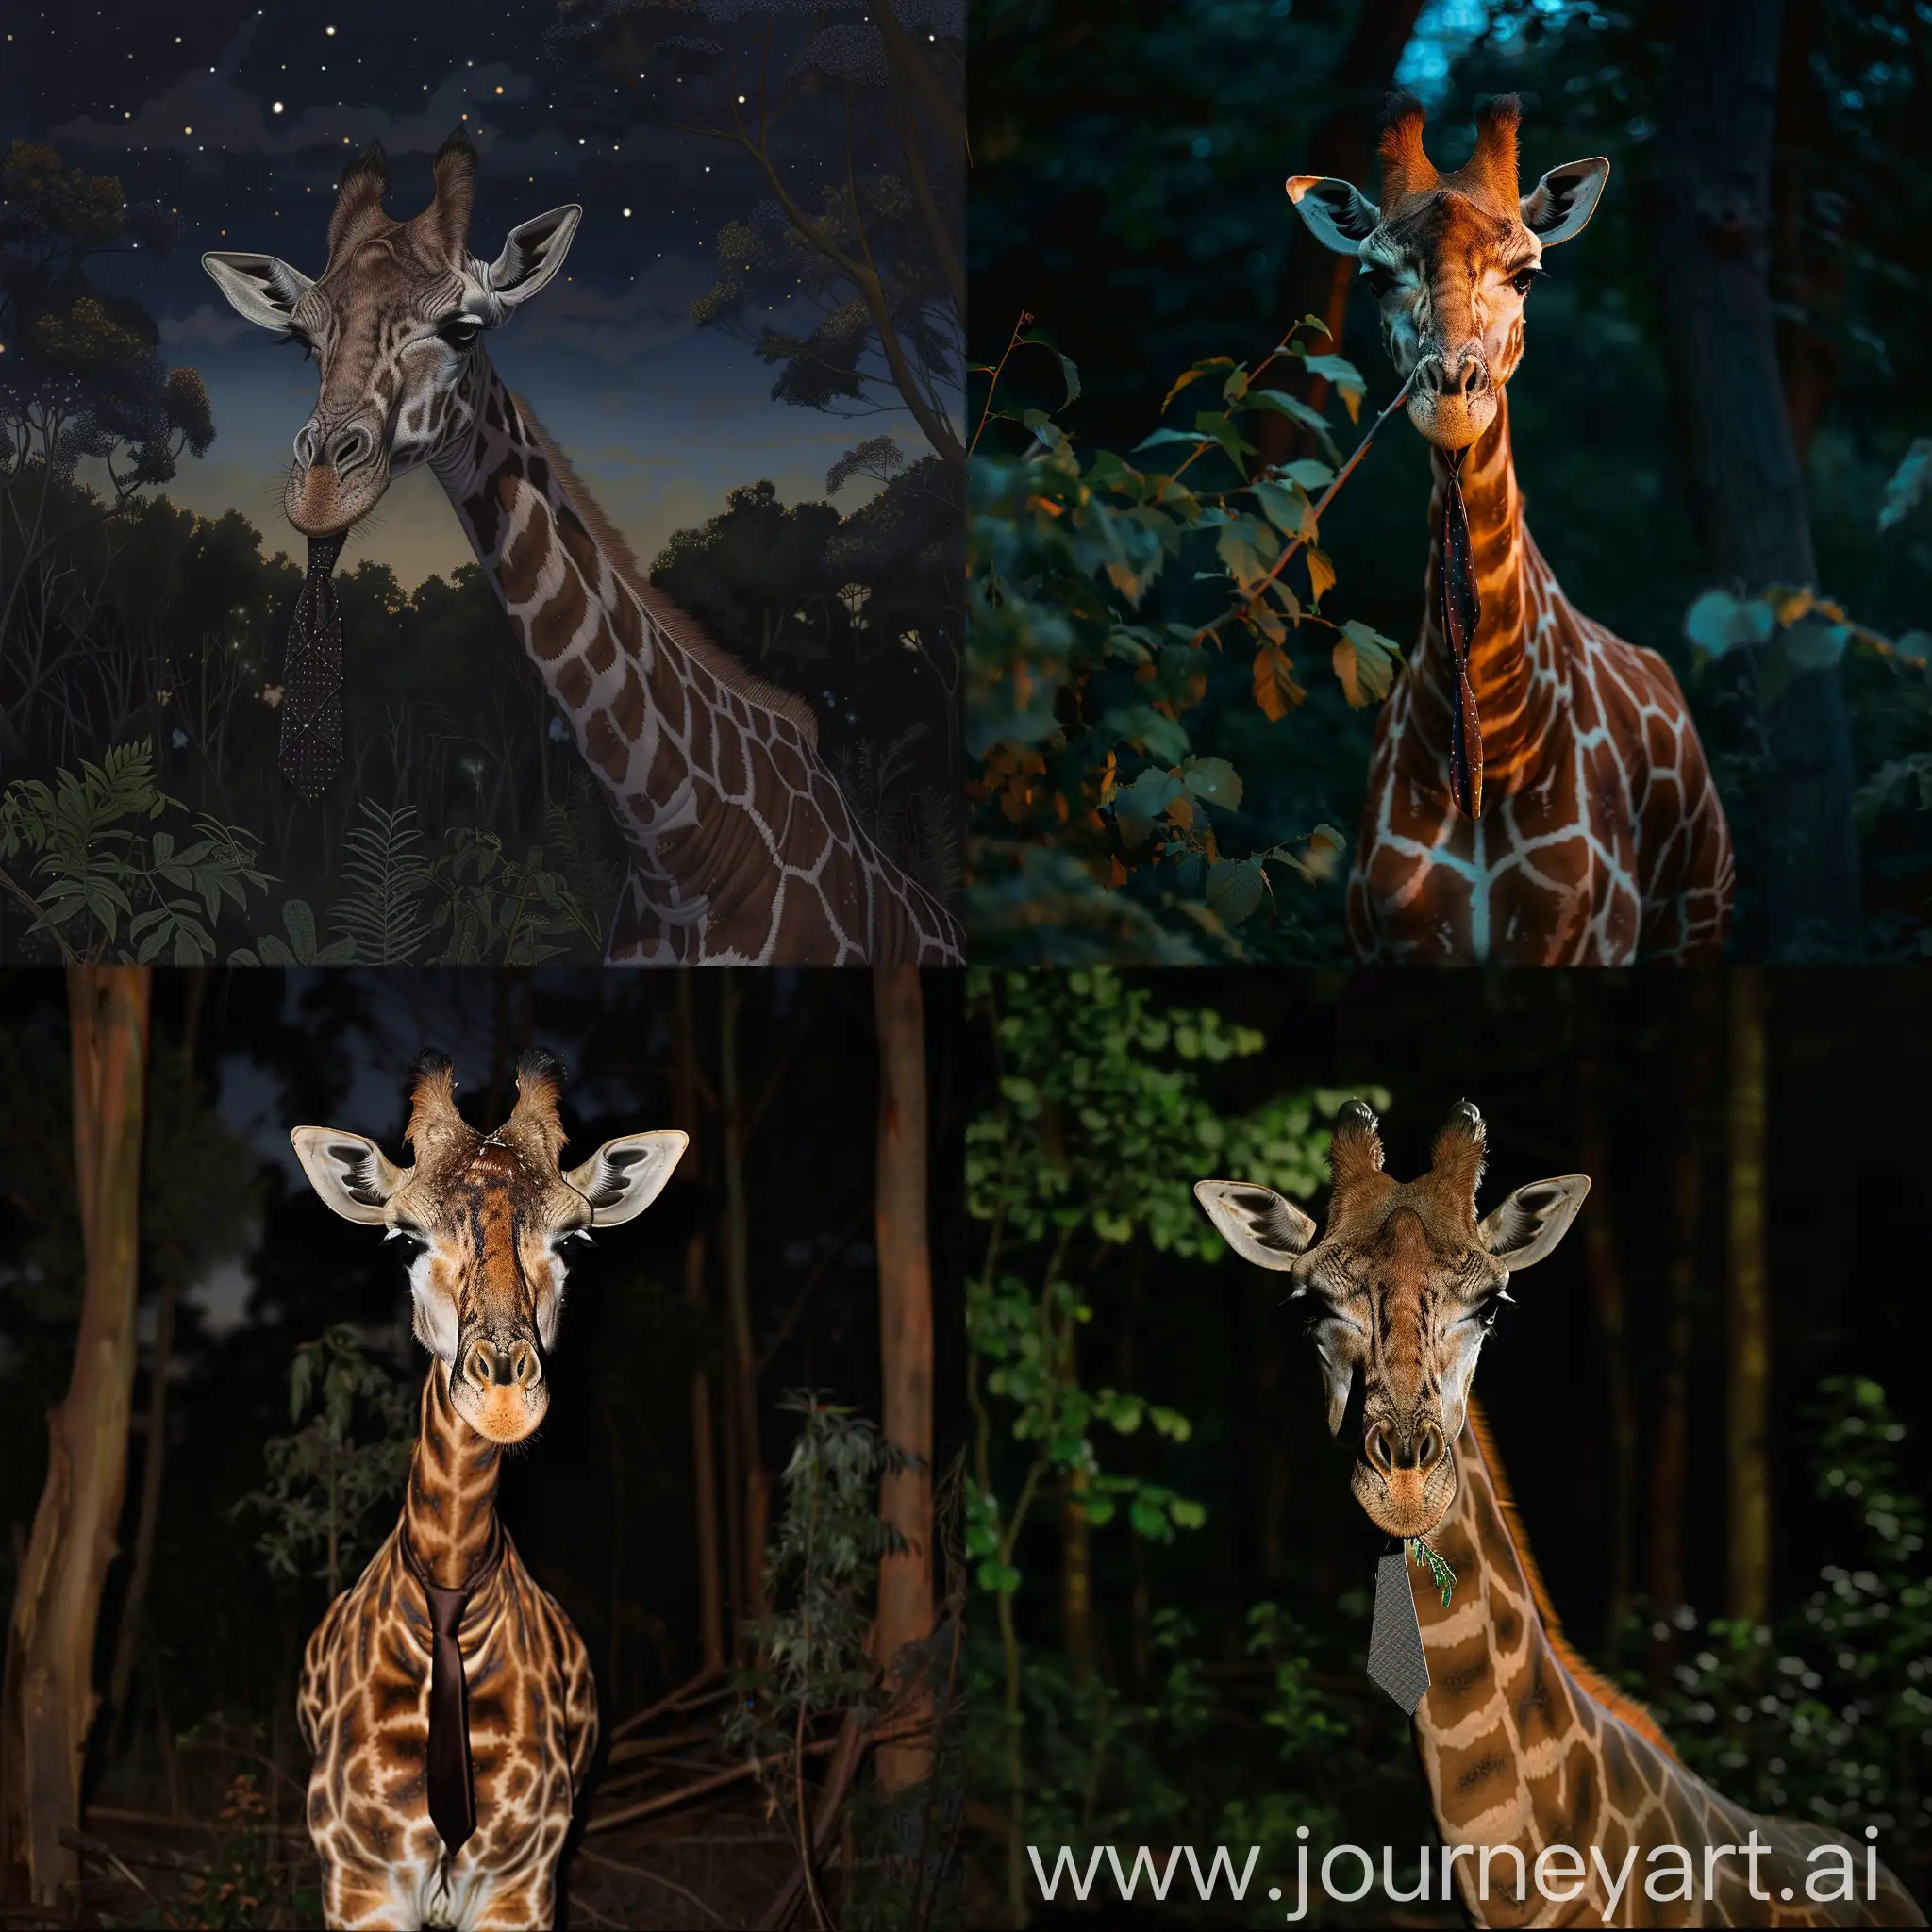 Giraffe-Wearing-a-Tie-Nocturnal-Scene-in-the-Forest